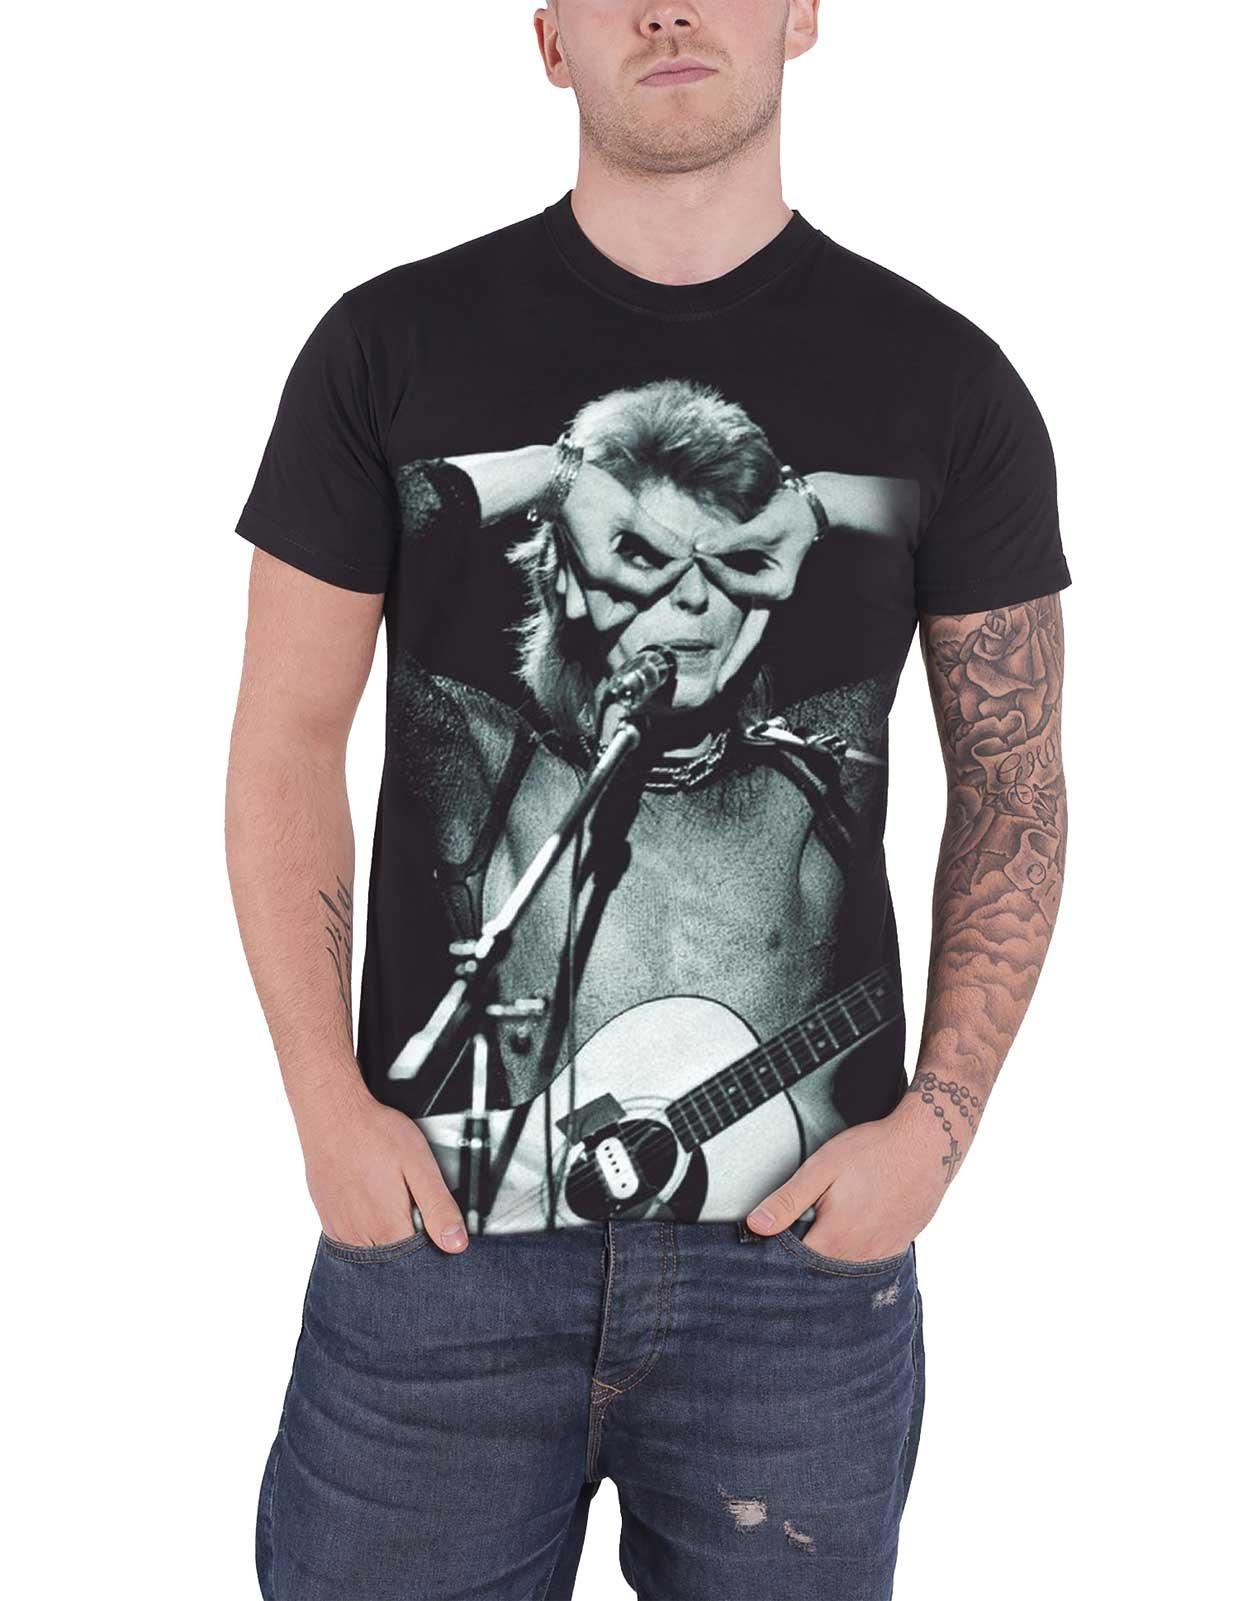 Контрастная футболка Acoustic Aladdin Sane David Bowie, черный